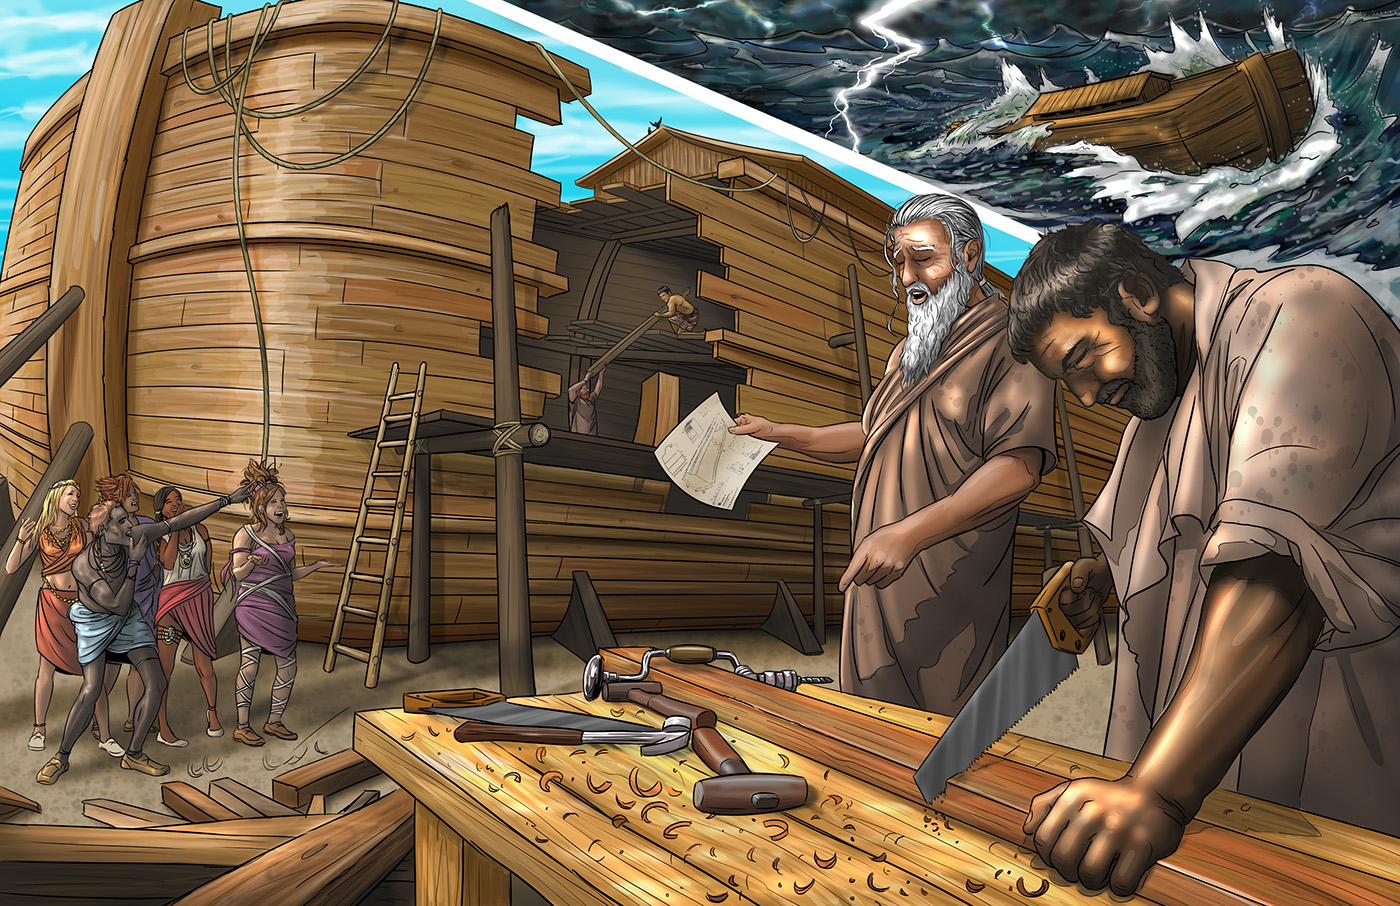 Noah Building the Ark on Behance